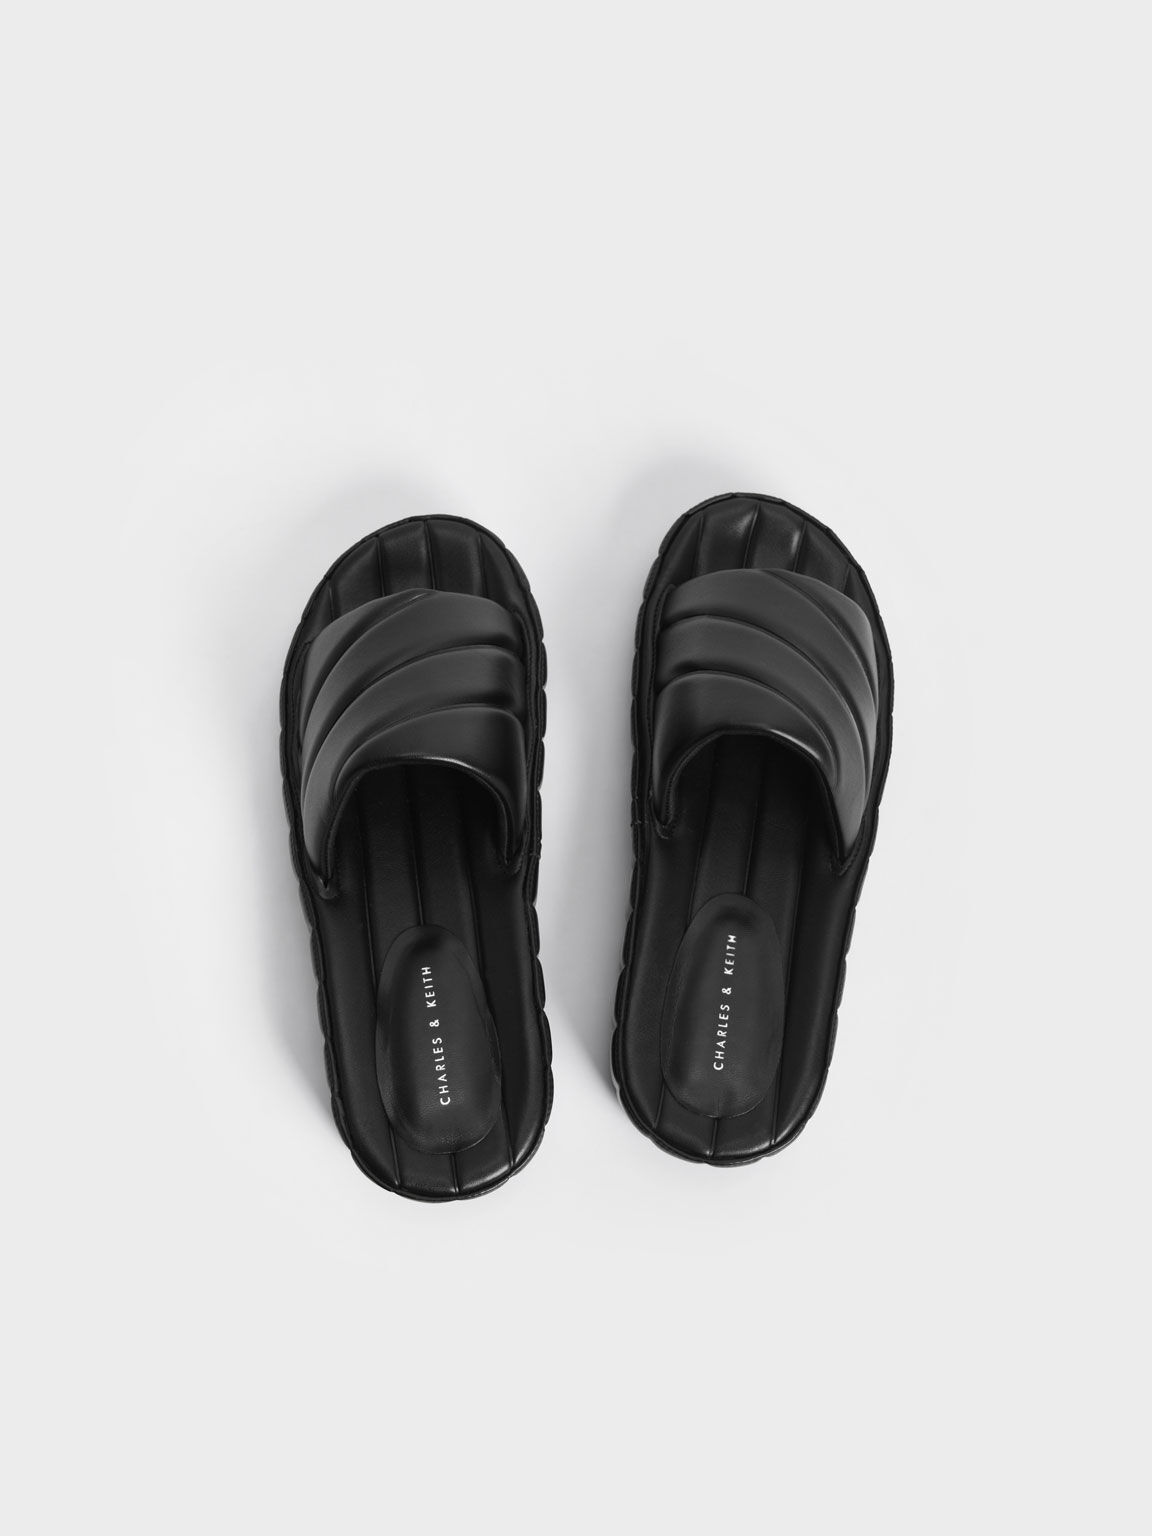 Puffy Flatform Slide Sandals, Black, hi-res